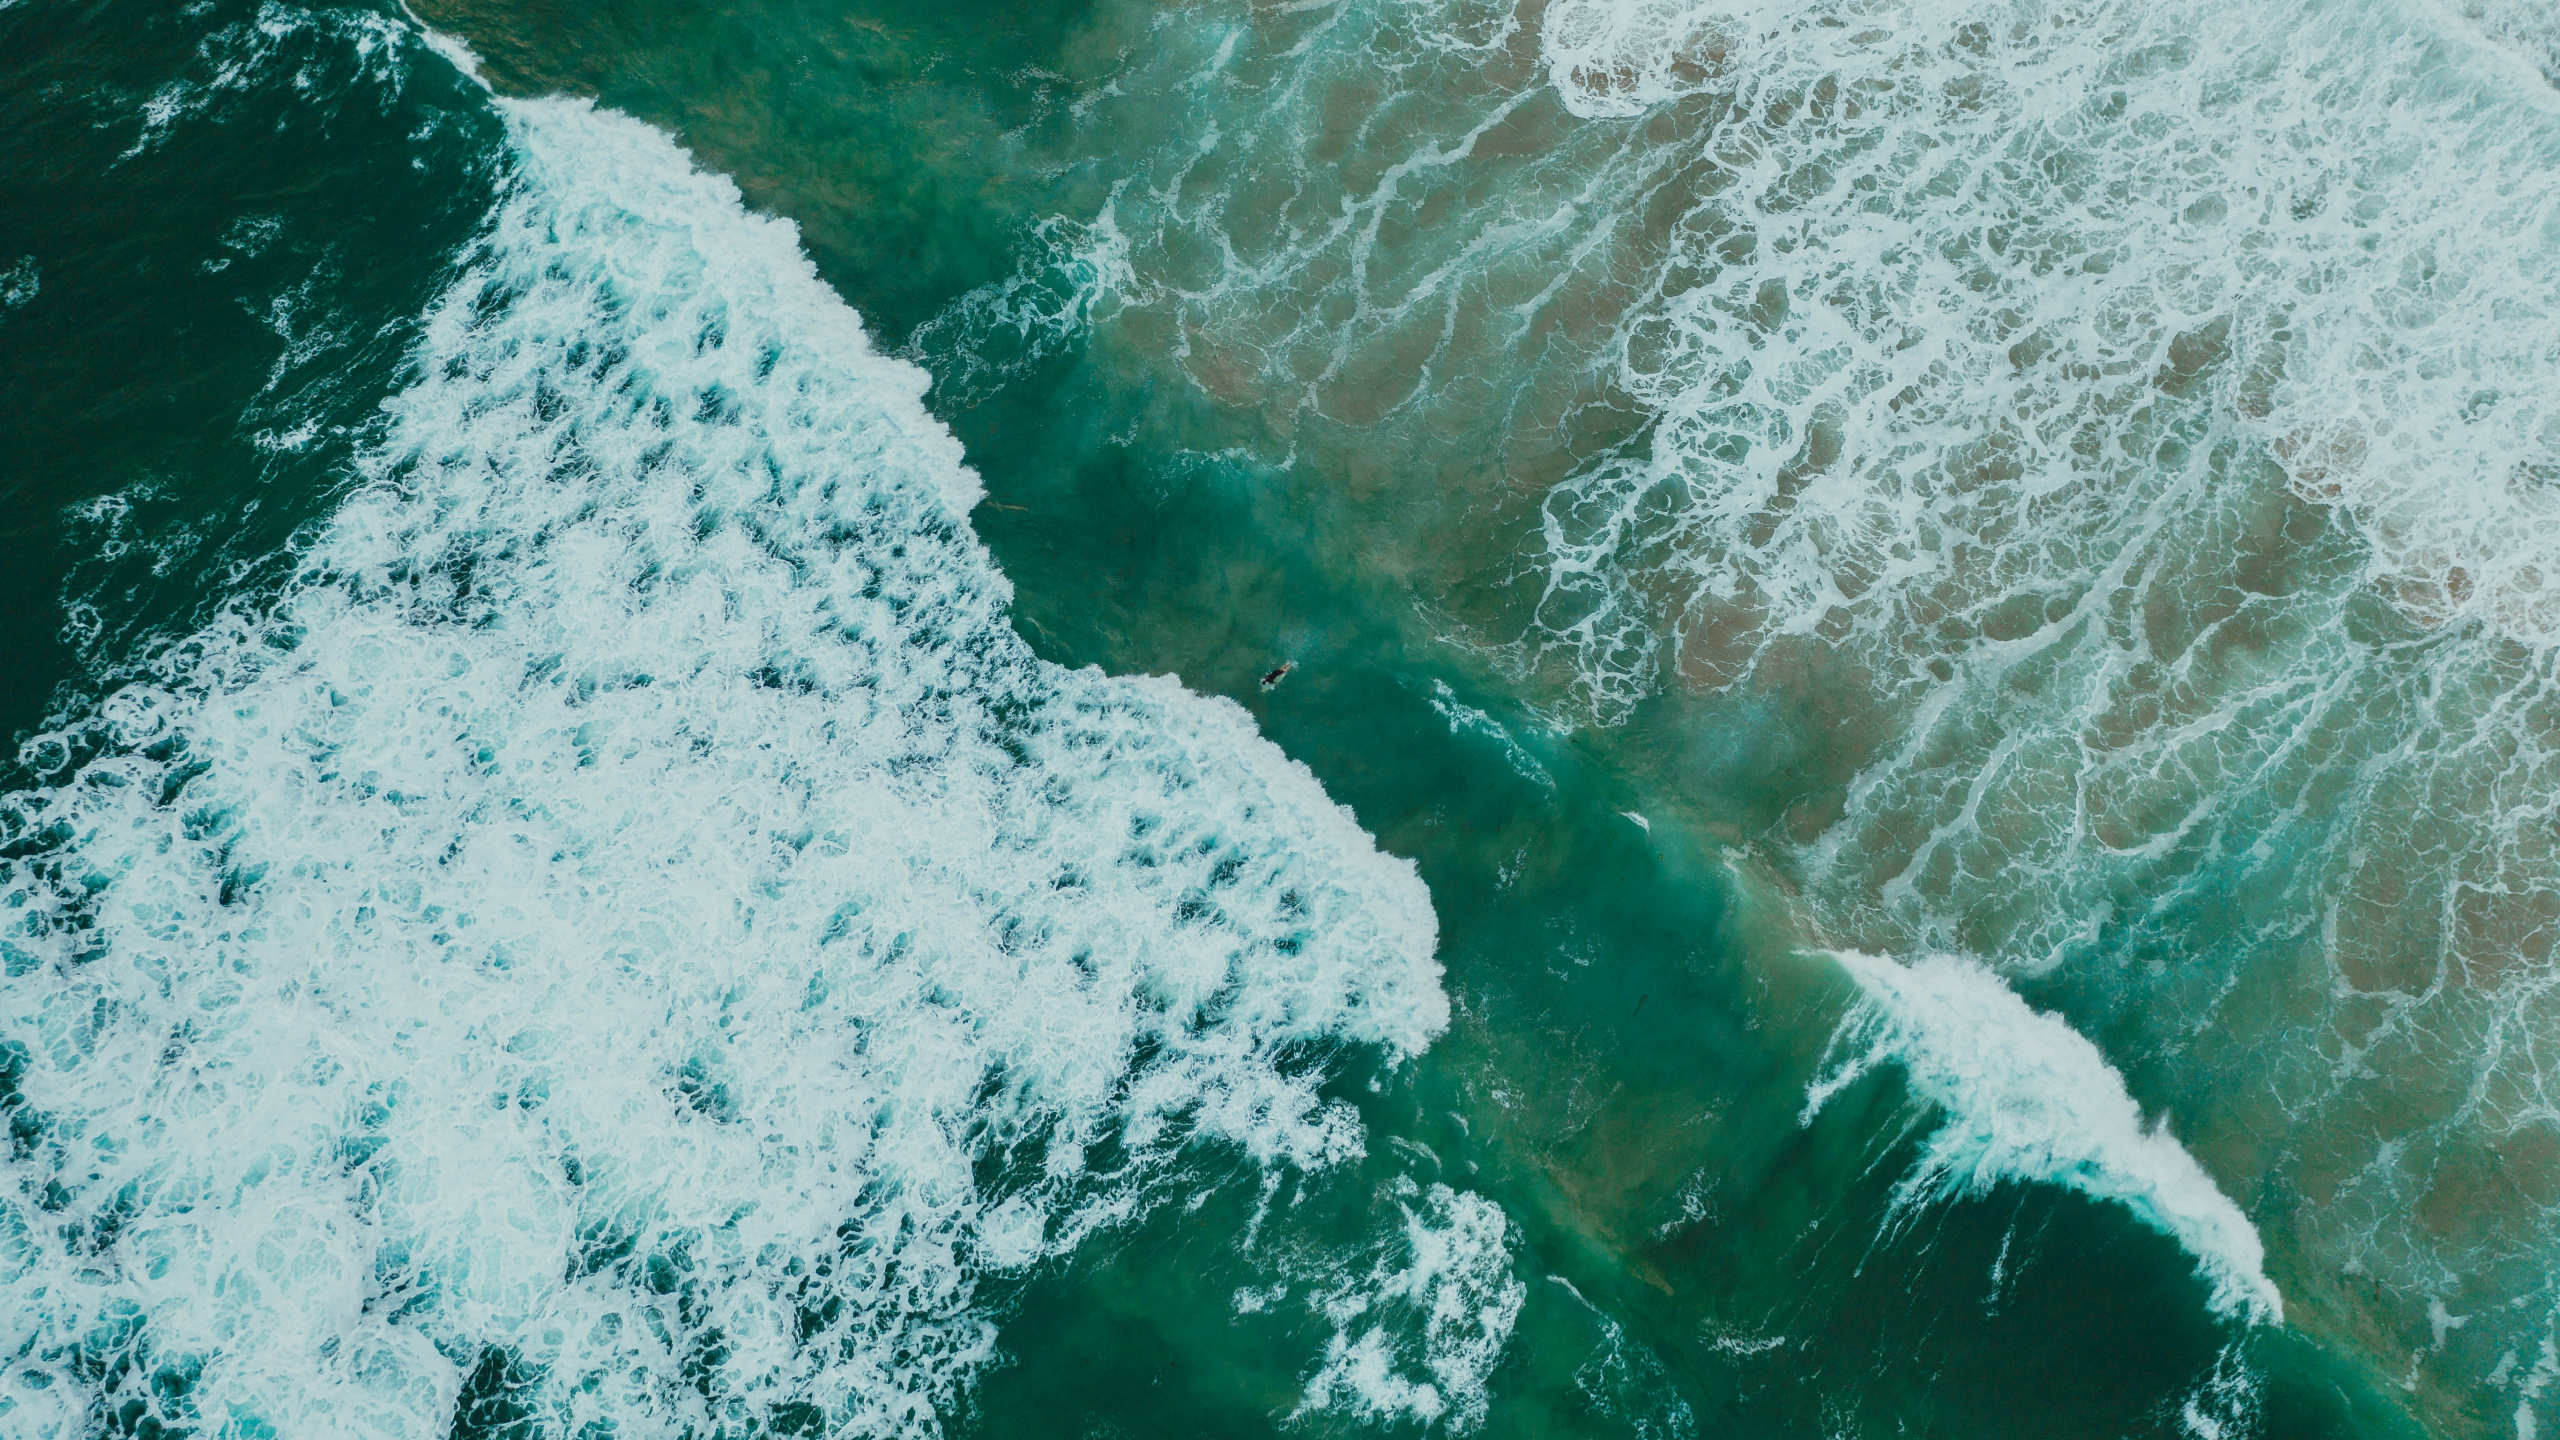 Oceano, Mar, el Viento de la Onda, Agua, Verde. Wallpaper in 2560x1440 Resolution